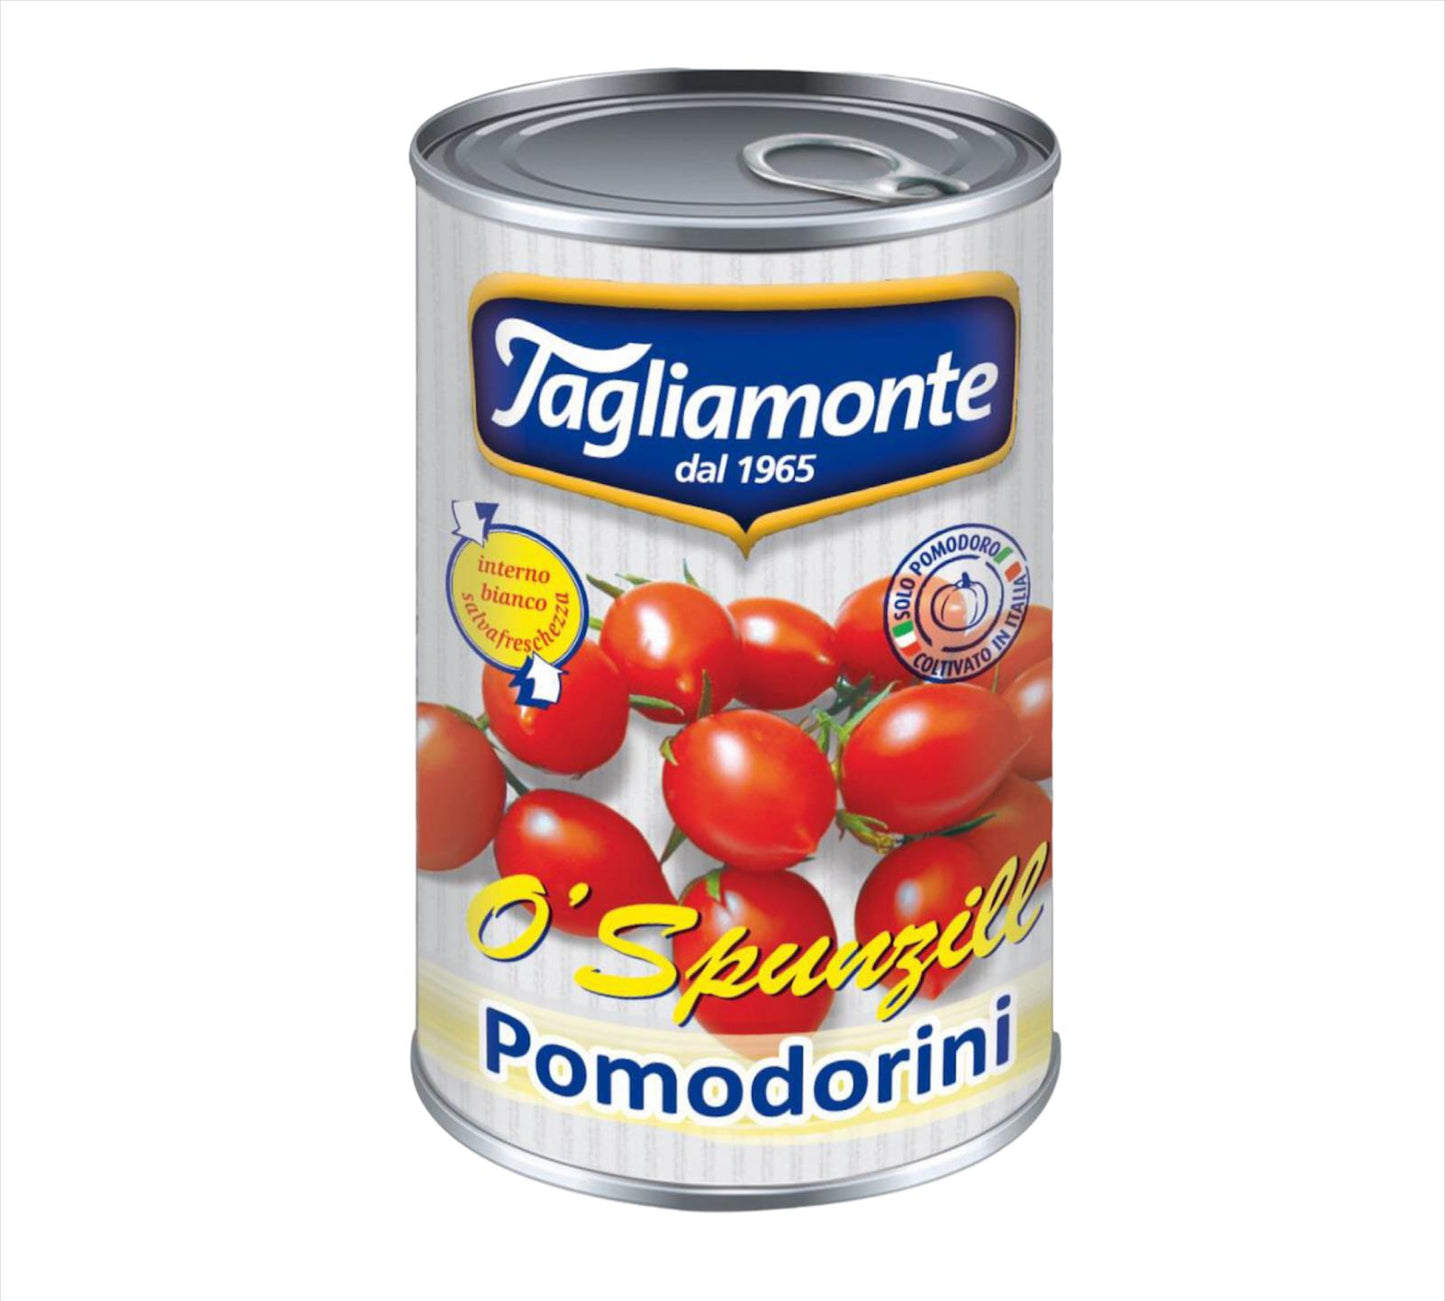 Tagliamonte pomodorini " O' SPUNZILL" barattolo da 400g